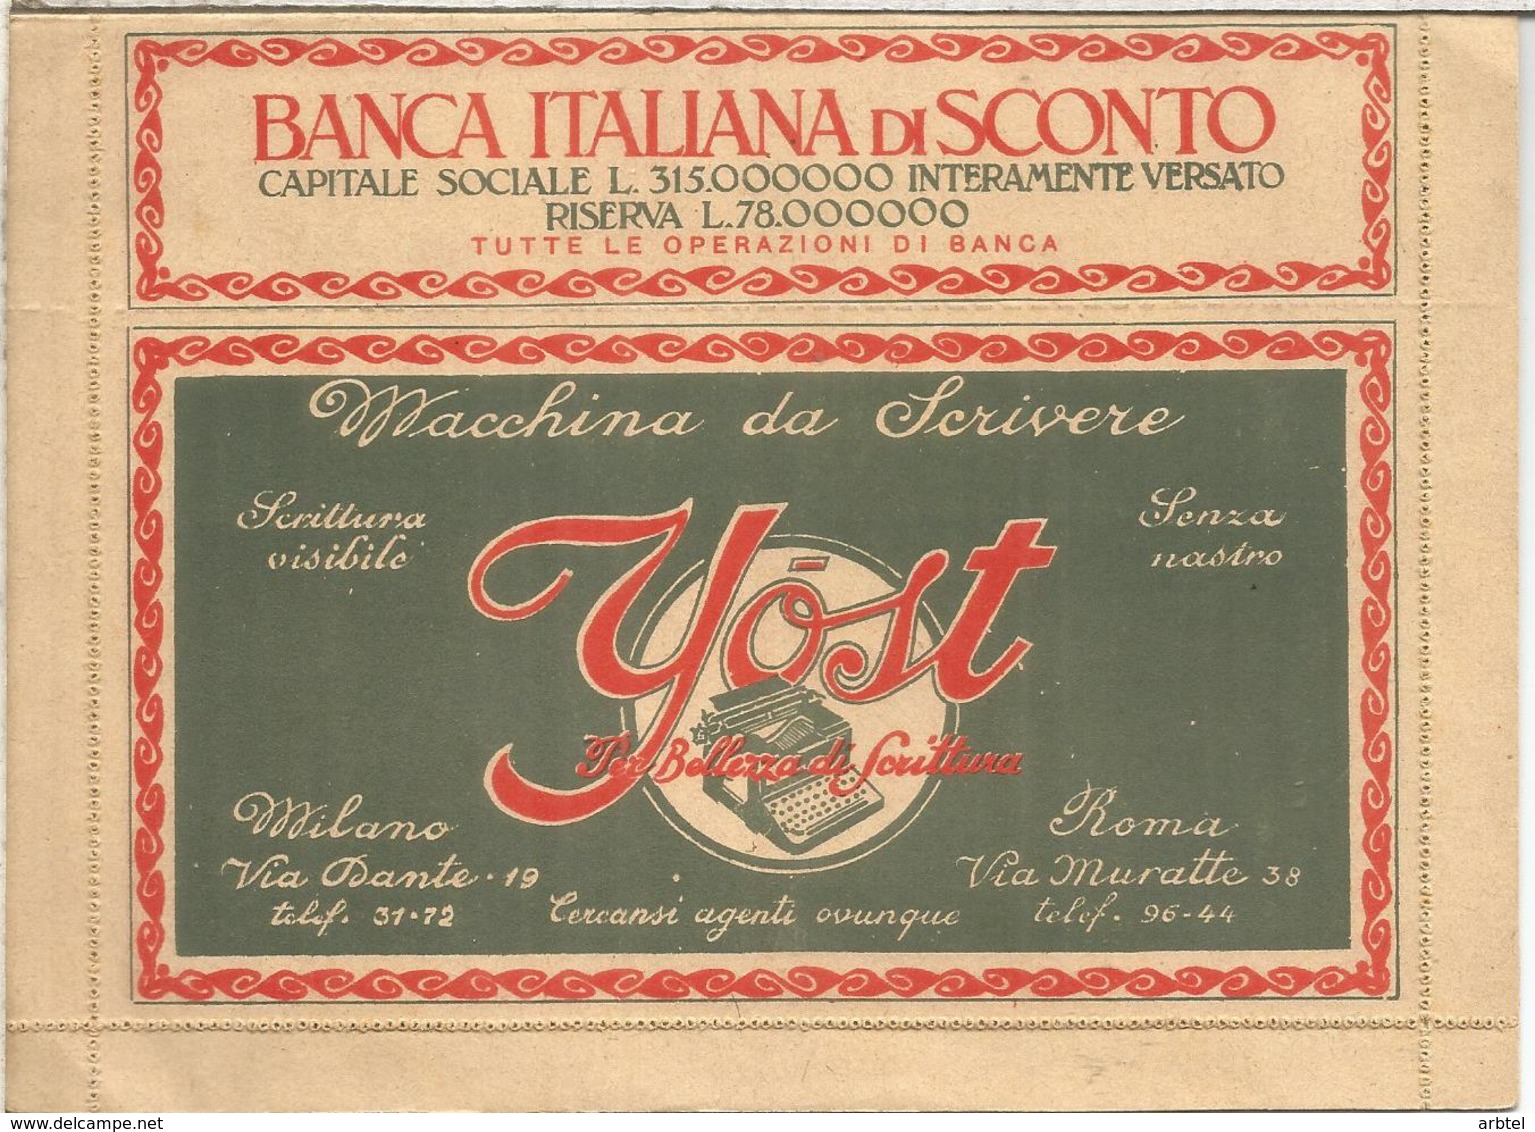 ITALIA BLP HACIA 1920S SERIE LIGURIA CARTA CON PUBLICIDAD DIVERSA BARCO SHIP BANK TYPEWRITER COGNAC COMIDA VINO MARSALA - Vinos Y Alcoholes